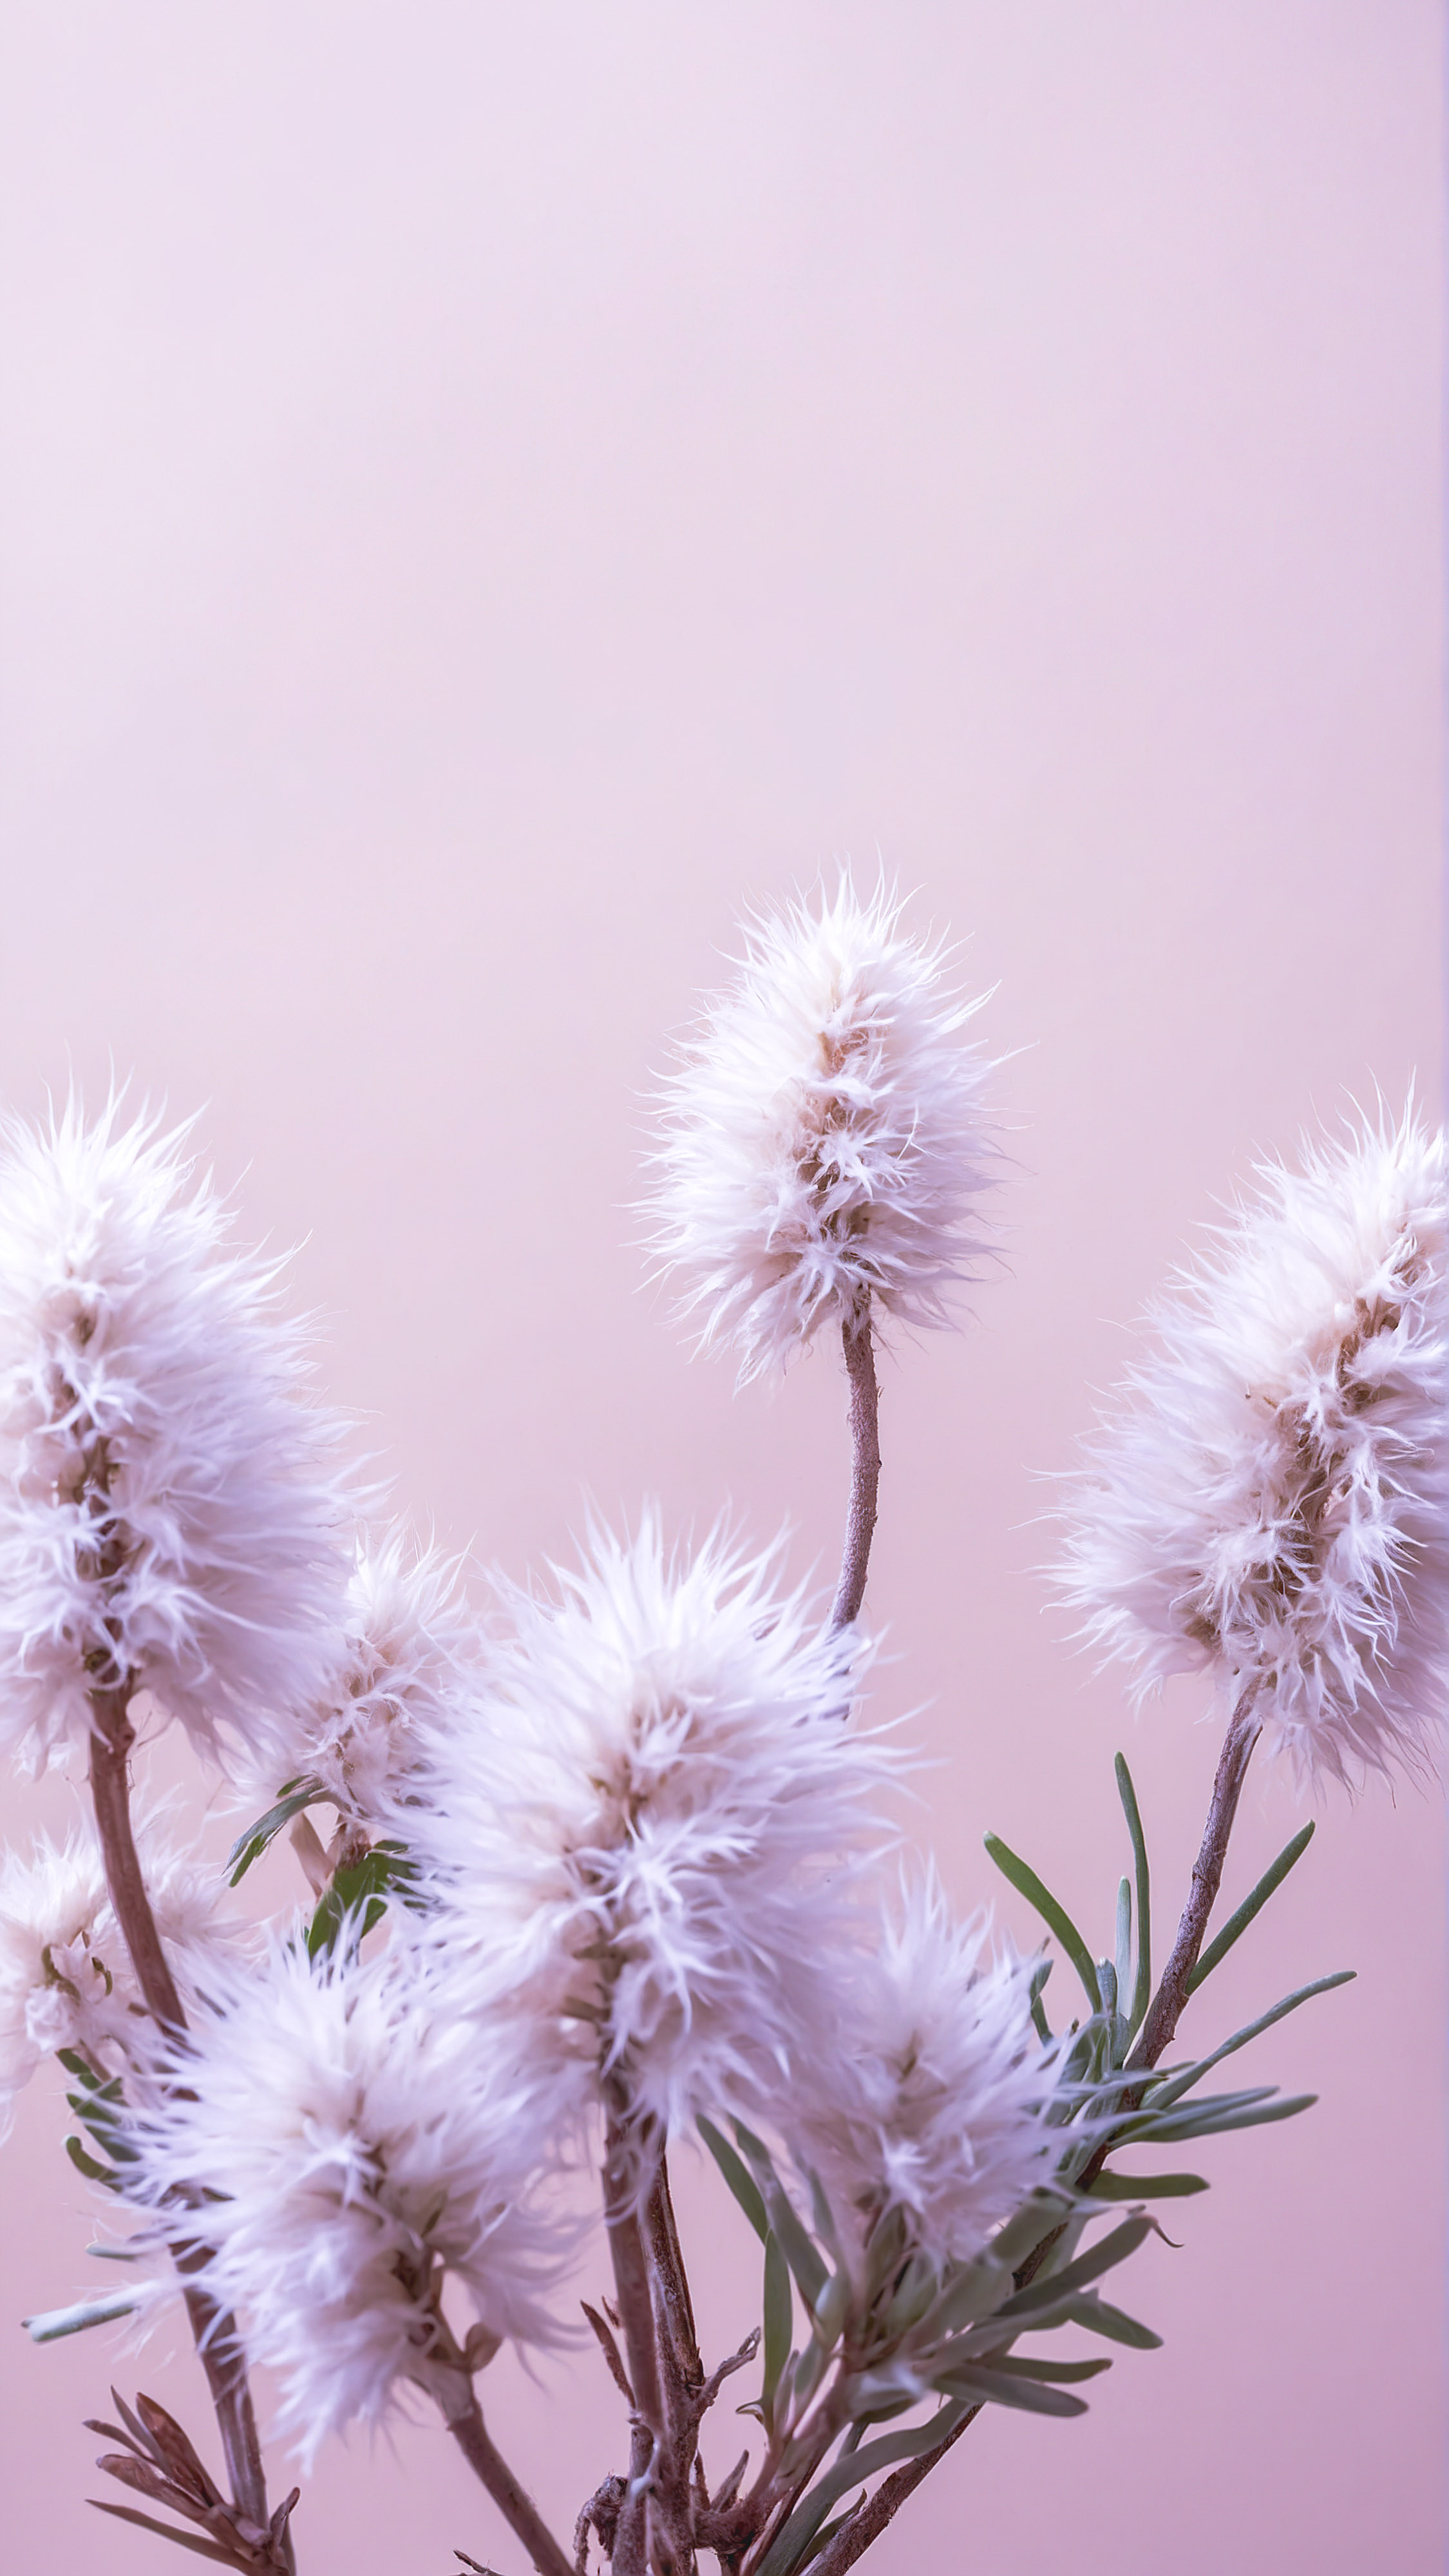 Apportez la beauté de la nature à votre écran avec notre fond d'écran HD mignon pour iPhone, affichant des plantes moelleuses et claires sur un fond beige doux qui respire la tranquillité.